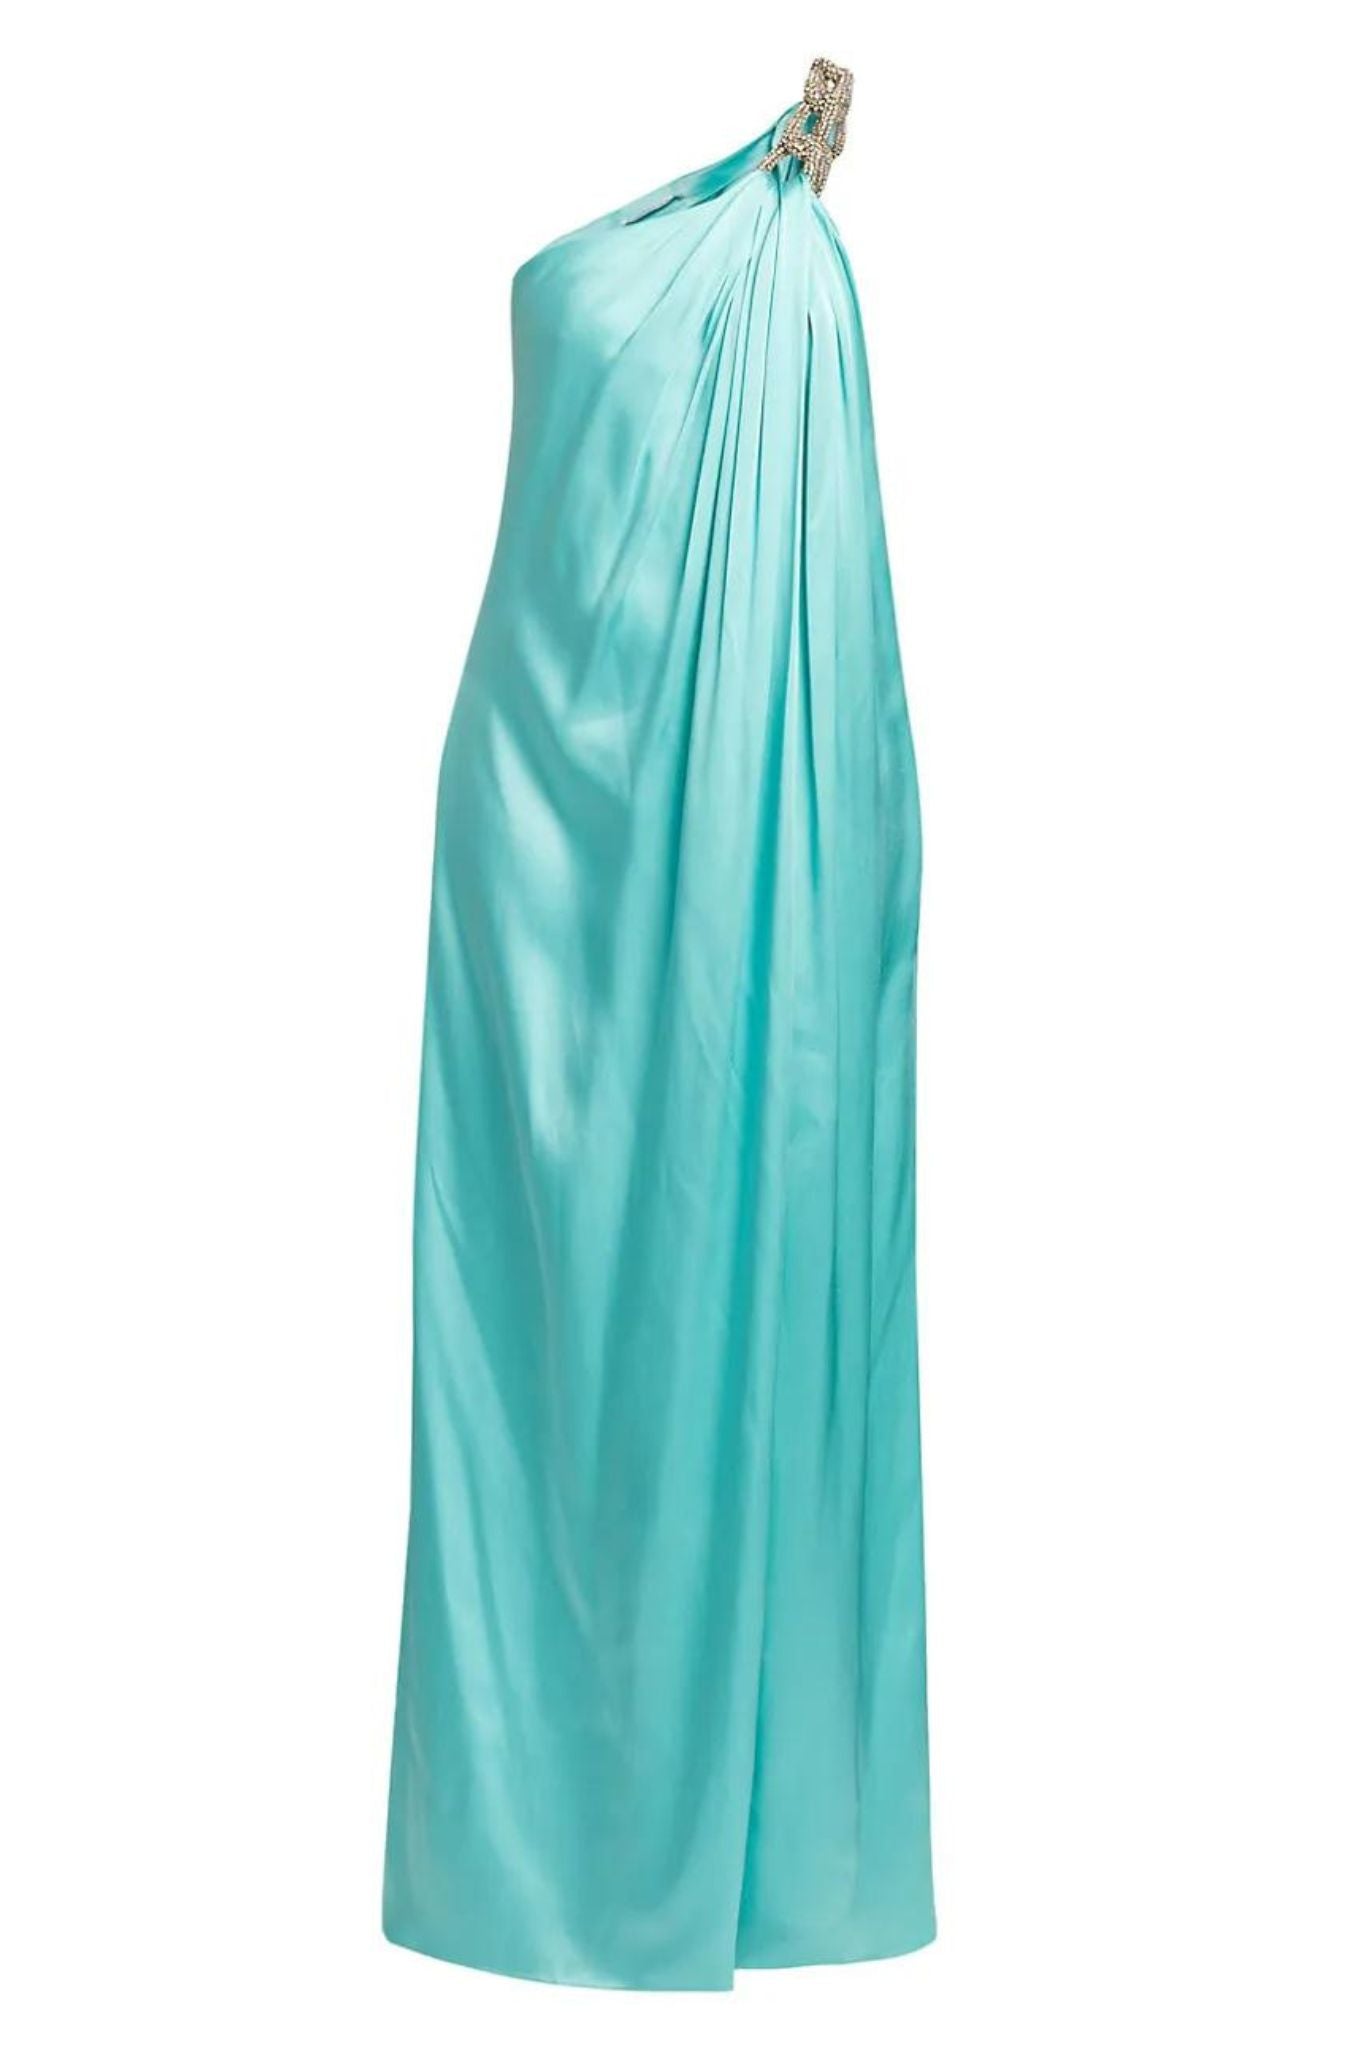 Stella McCartney Falabella Crystal Gown